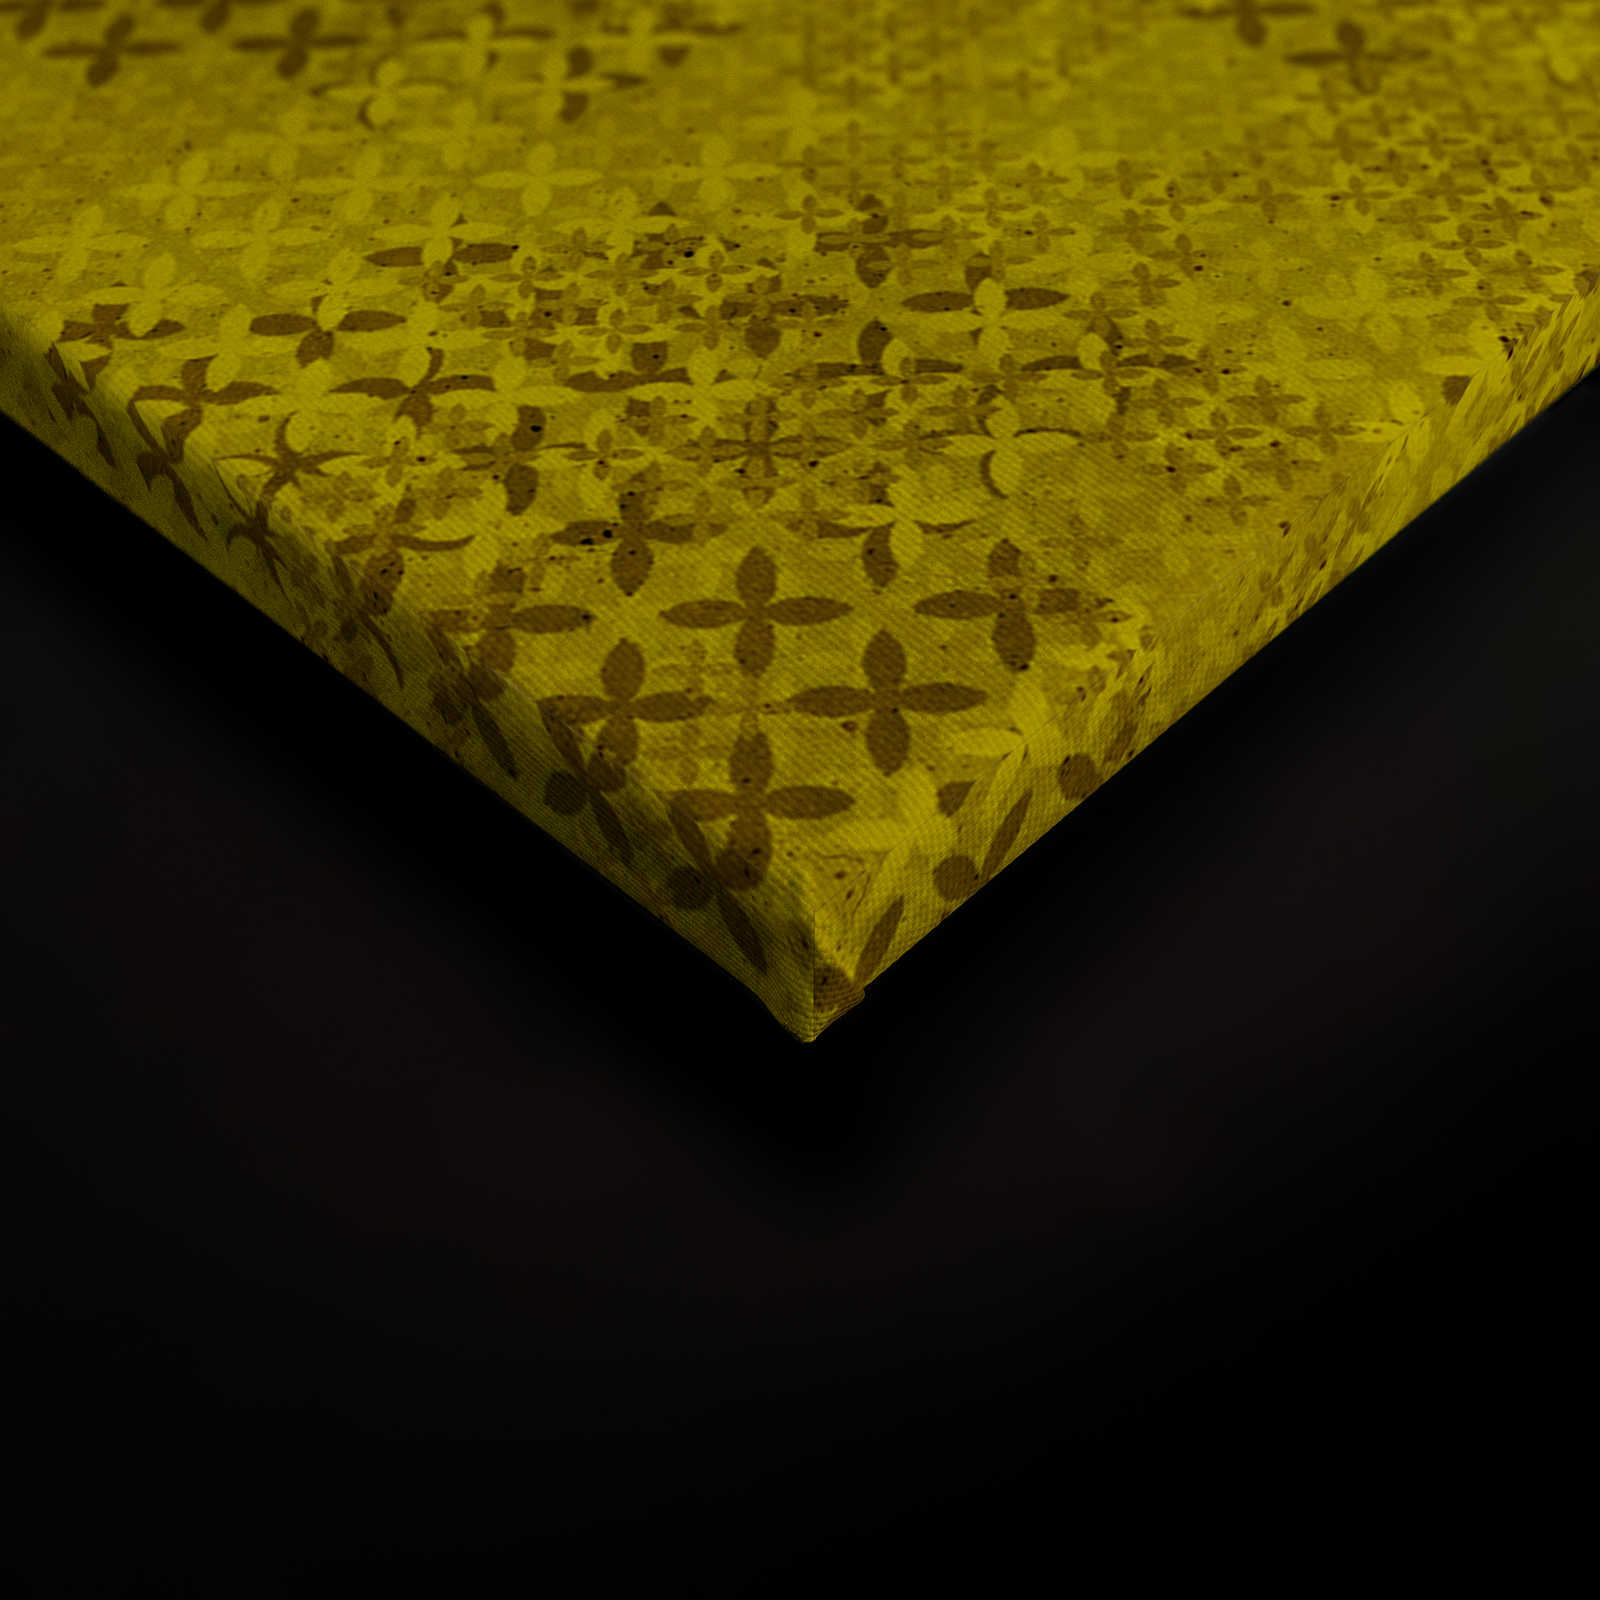             Pixel Leinwandbild Kreuzstich Muster – 1,20 m x 0,80 m
        